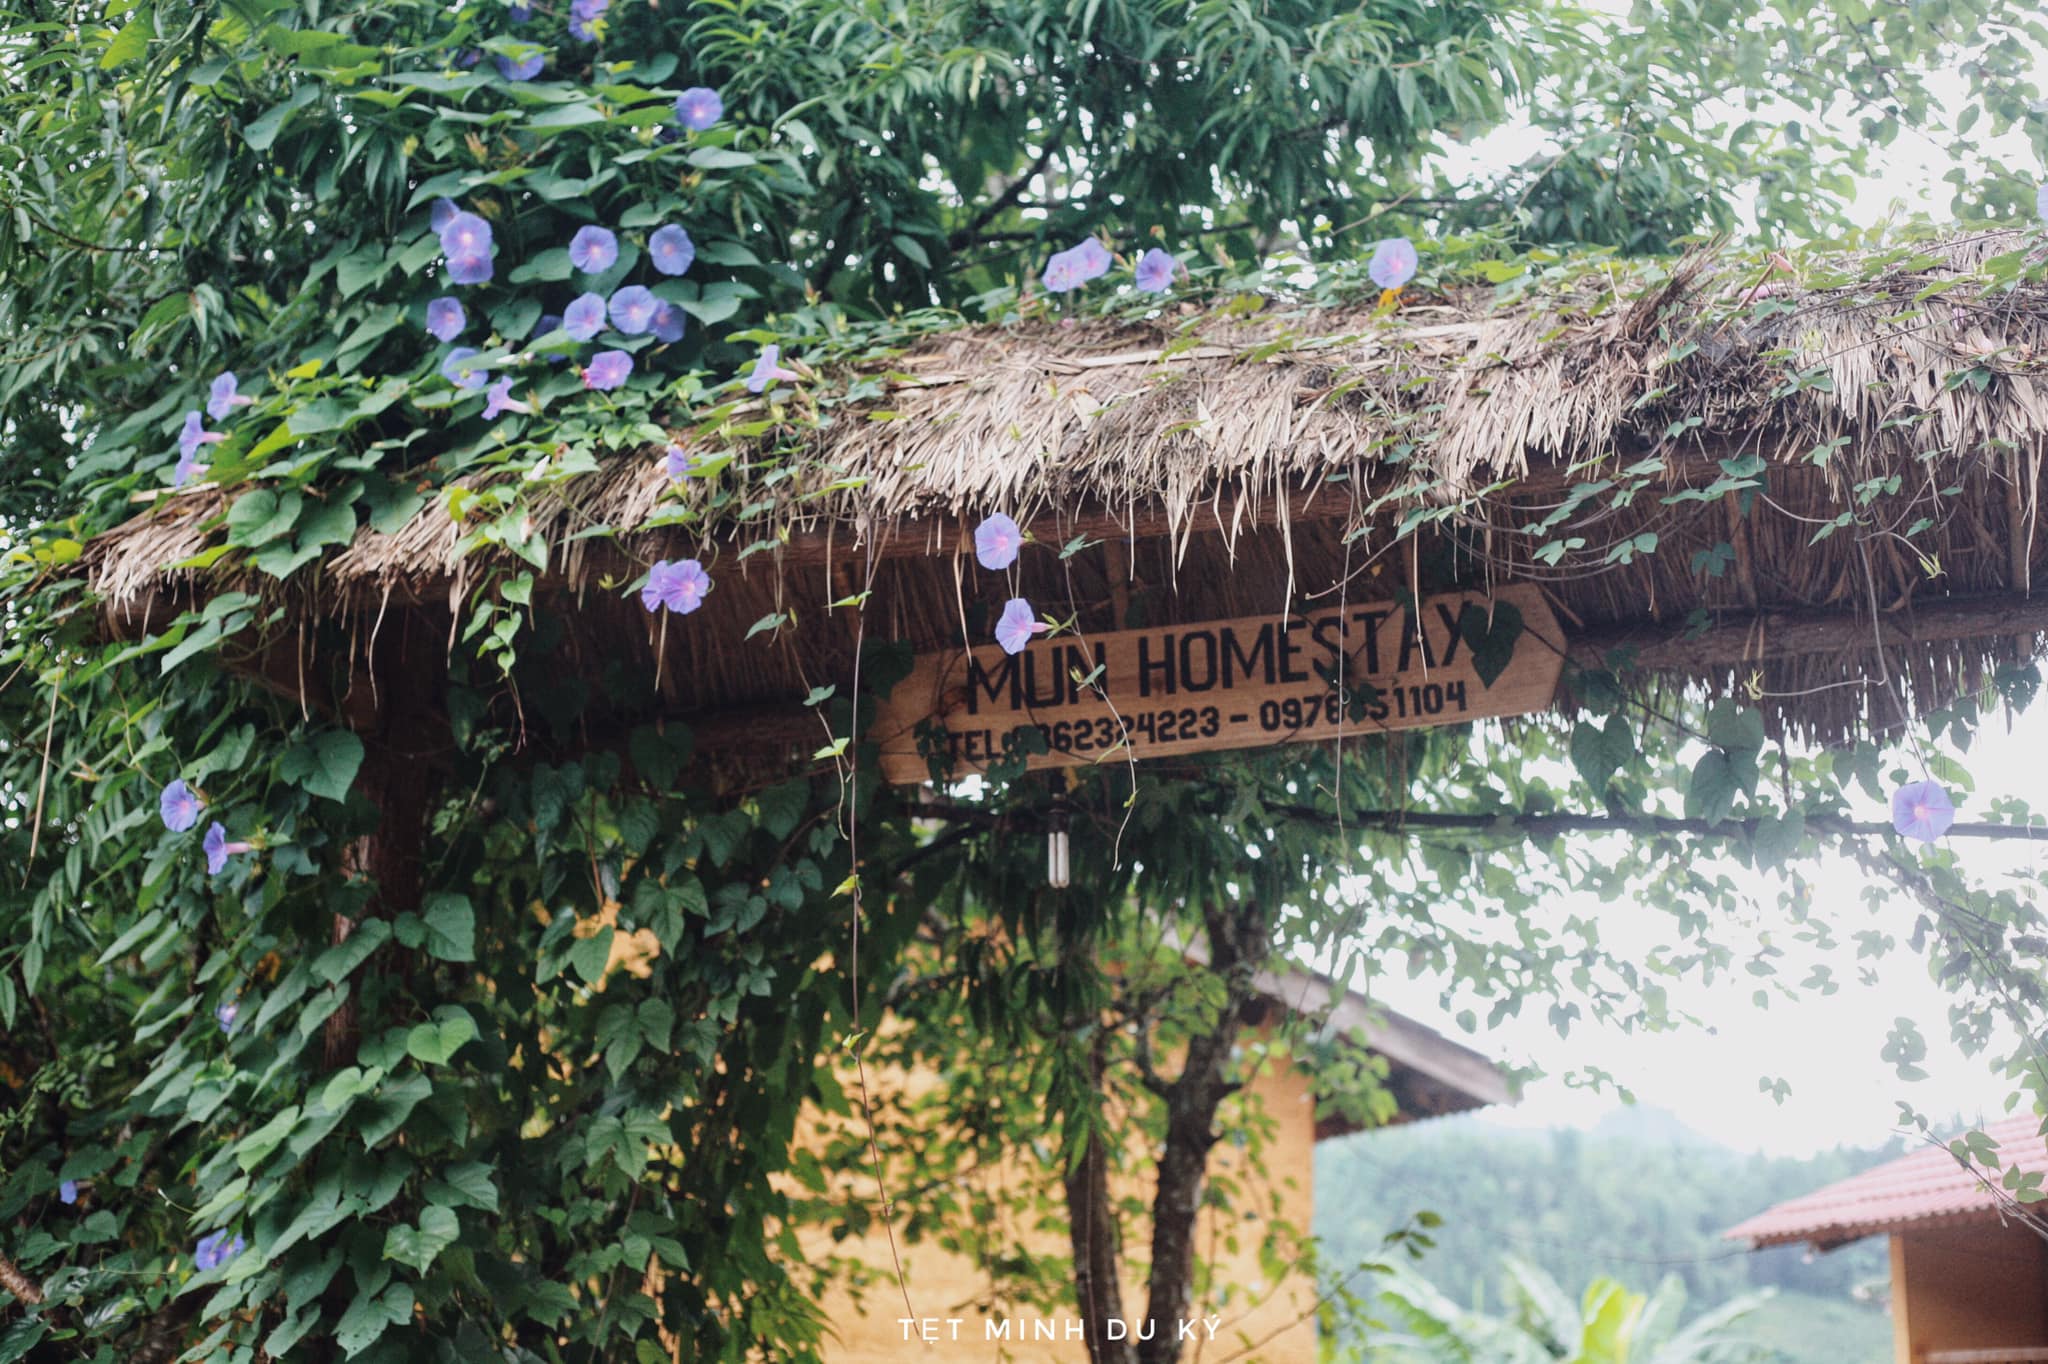 Mun Homestay entrance.  Photo: Nguyen Hoang Anh Minh